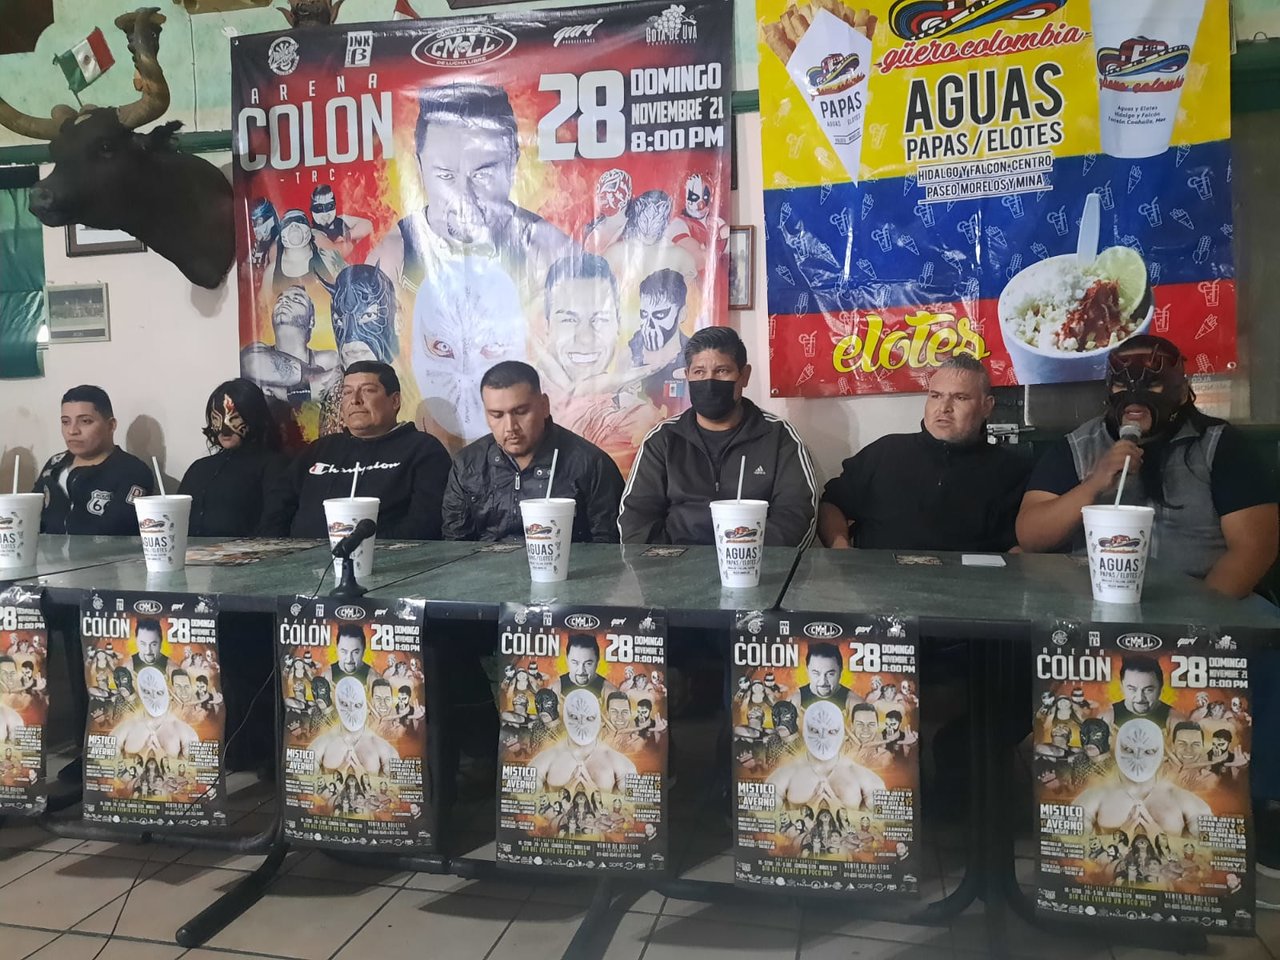 Una de las más encarnizadas rivalidades de la lucha libre mexicana, escribirá un nuevo capítulo en la Arena Colón este domingo 28 de noviembre a partir de las 20:00 horas